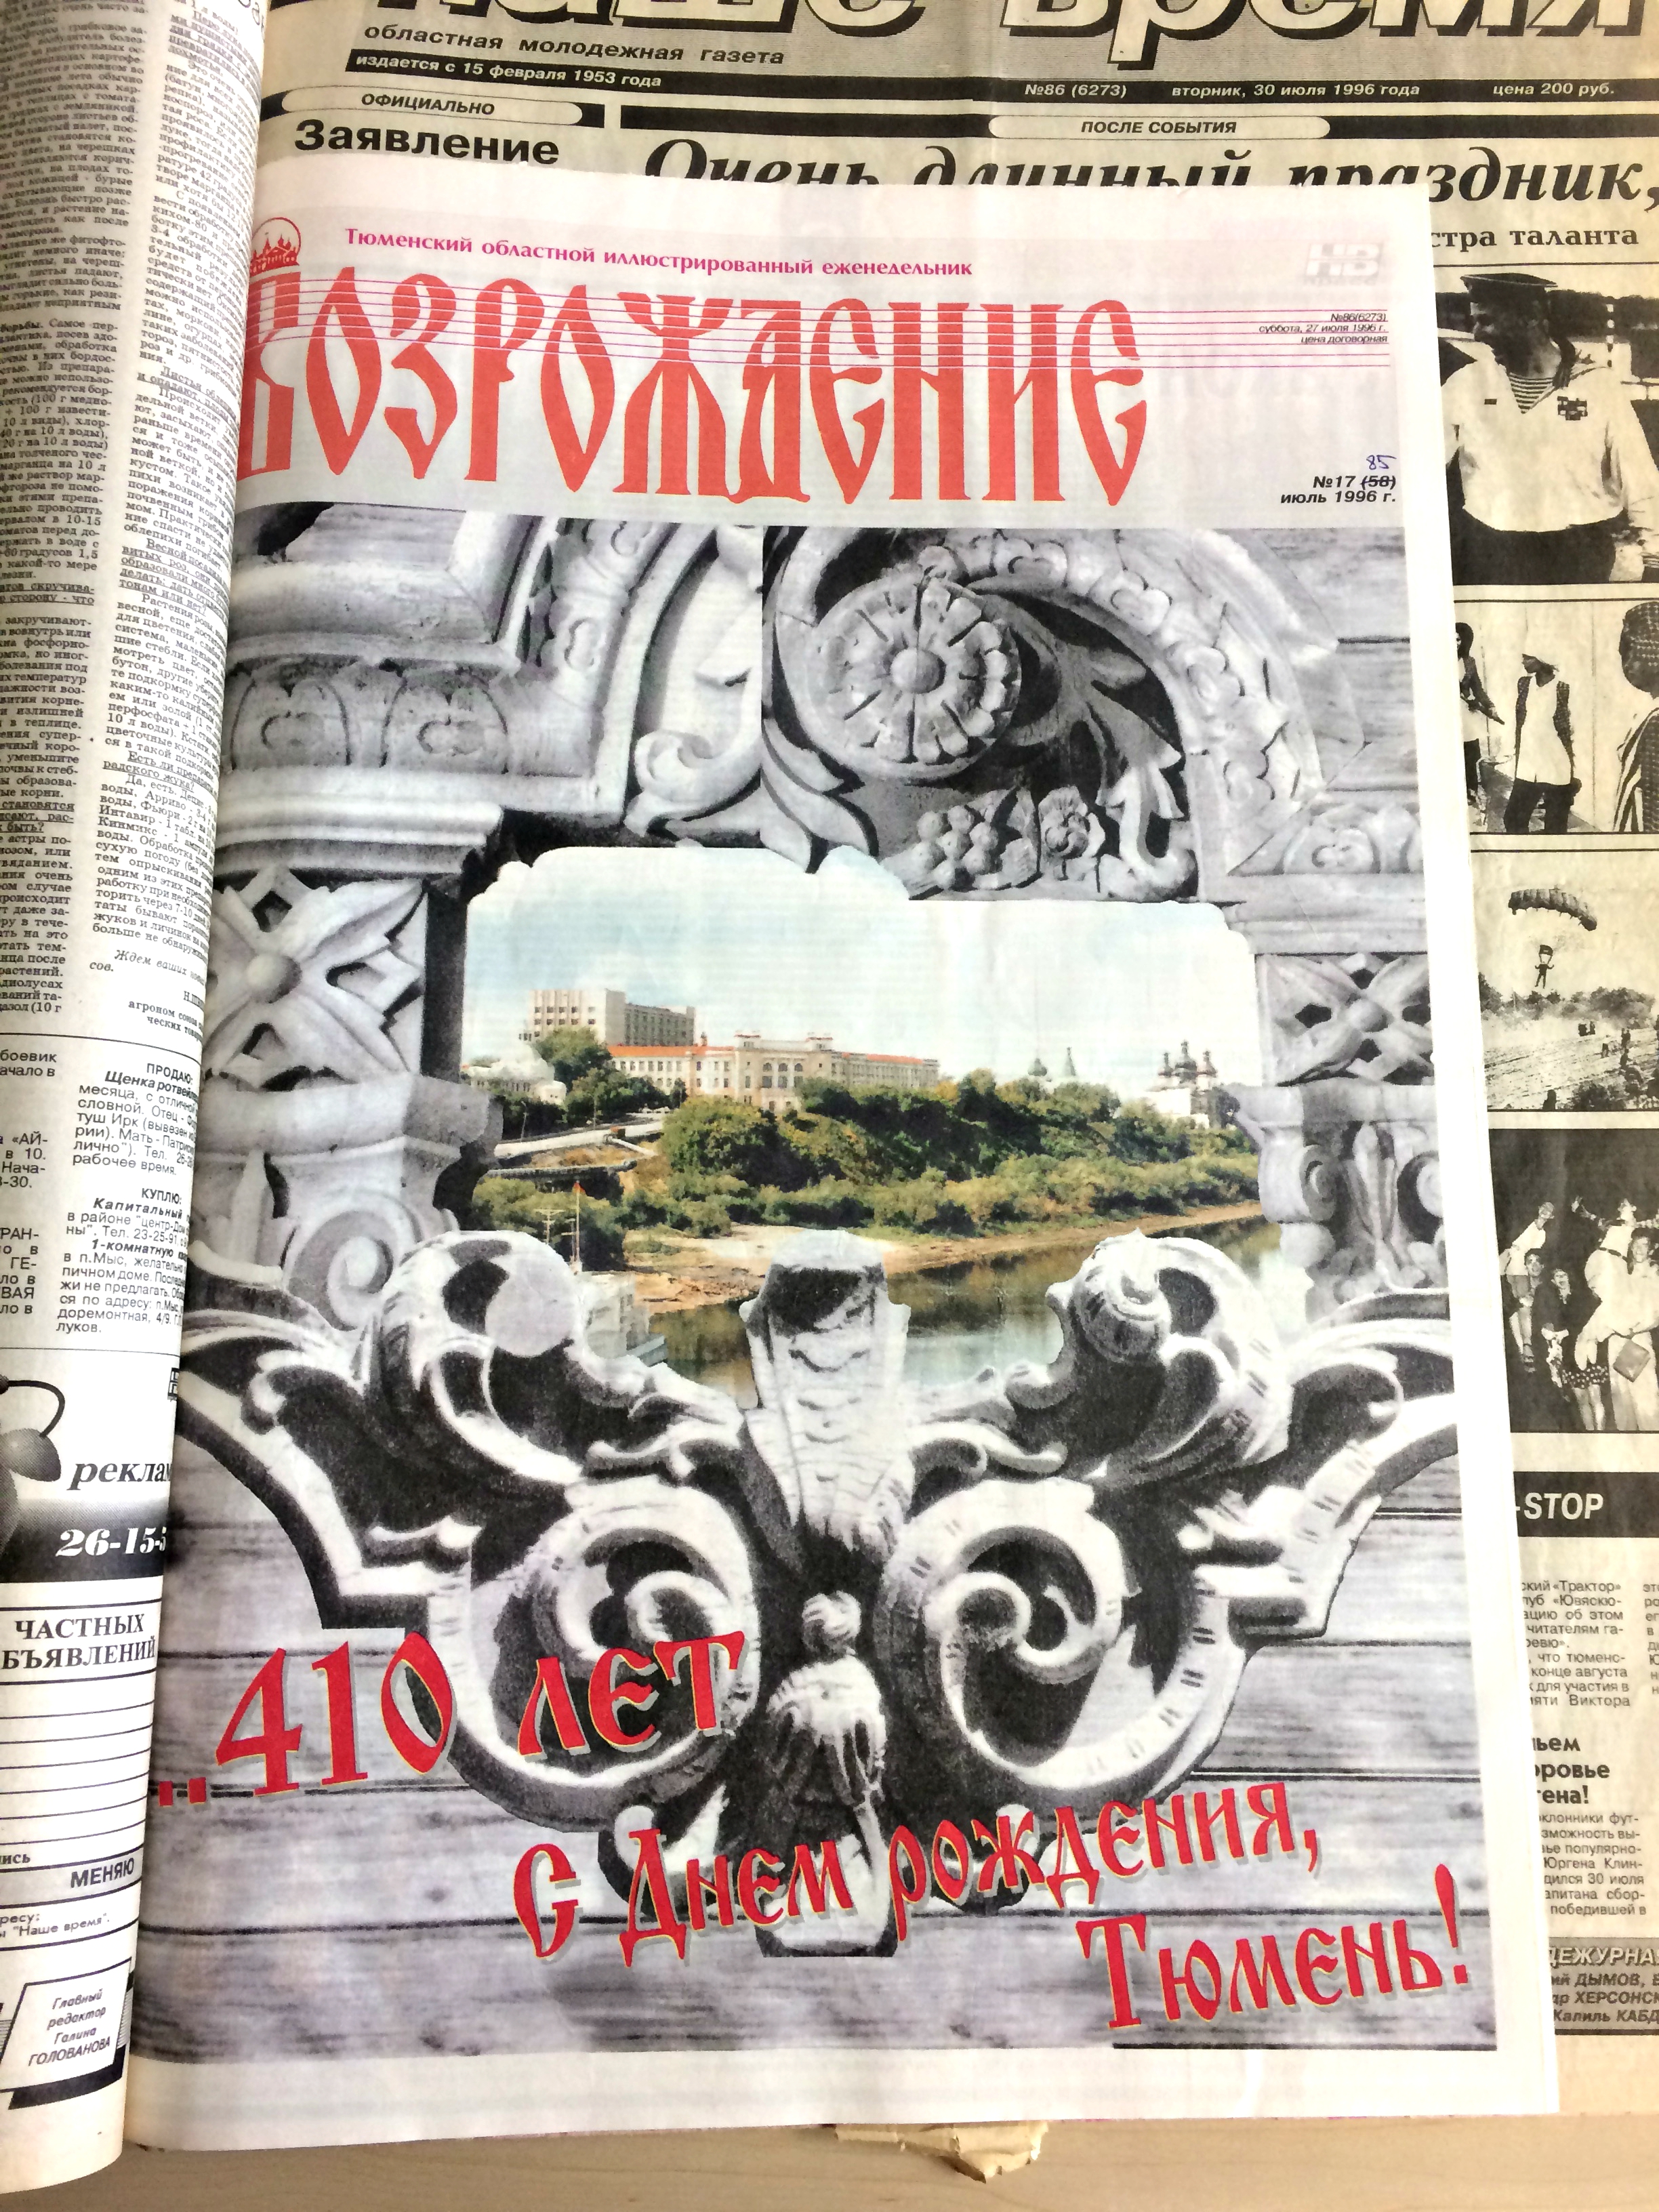 «Возрождение». 27 июля 1996 года. Коллаж с видом Тюмени — отличная альтернатива текстовому поздравлению — решила редакция издания